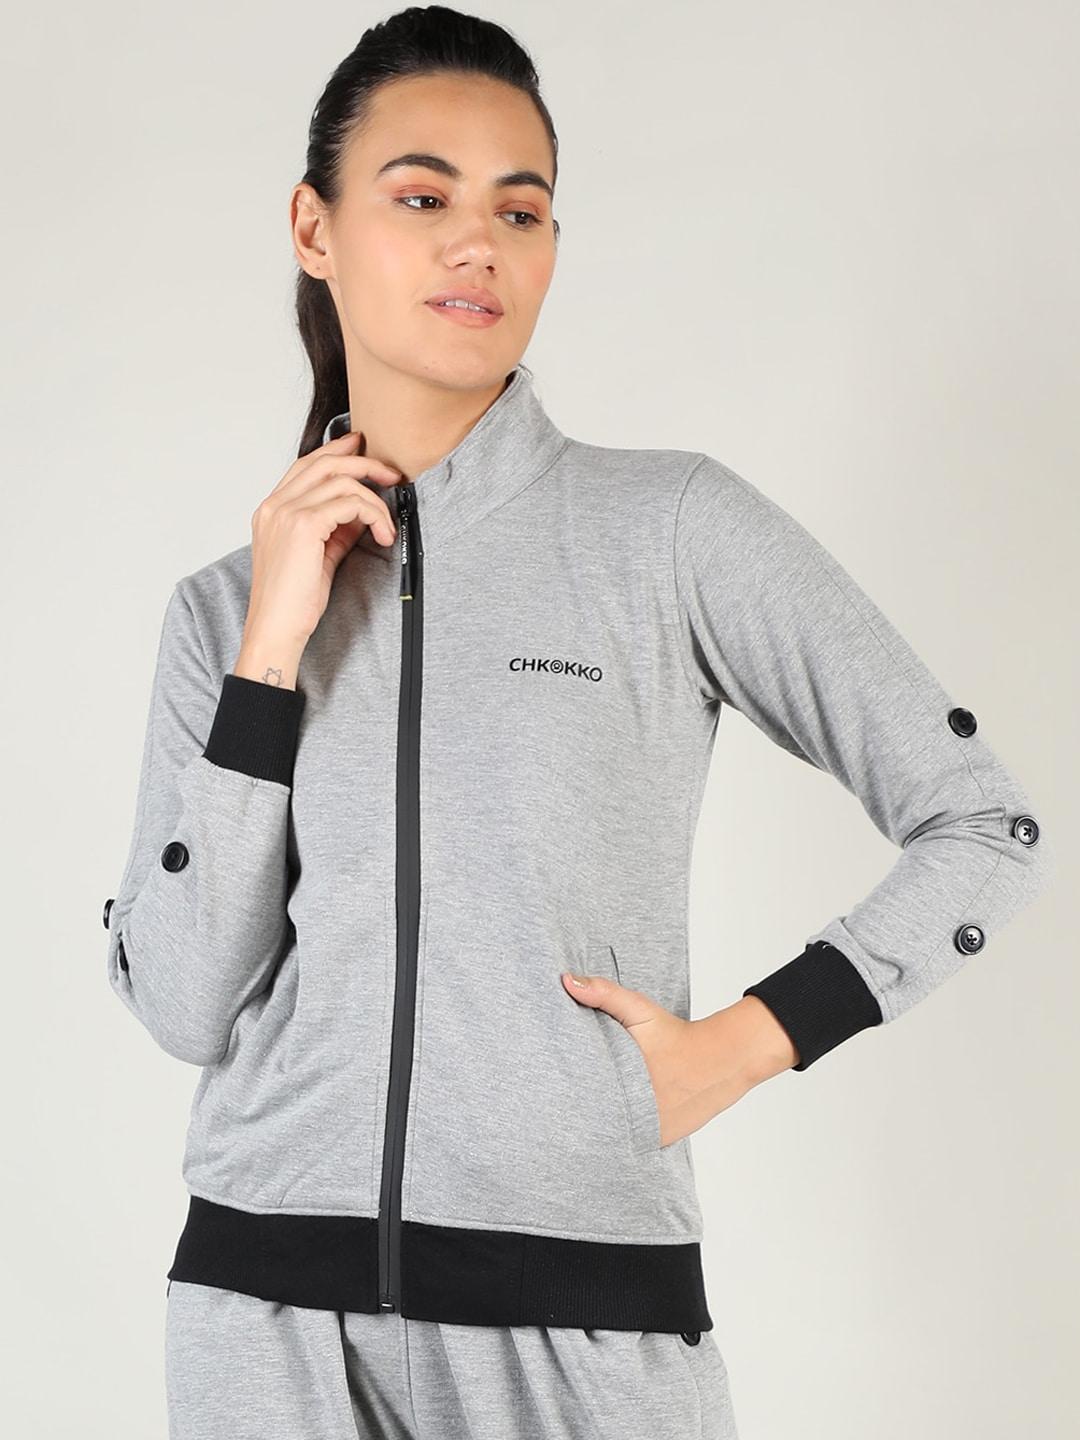 chkokko women grey training or gym sporty jacket with patchwork